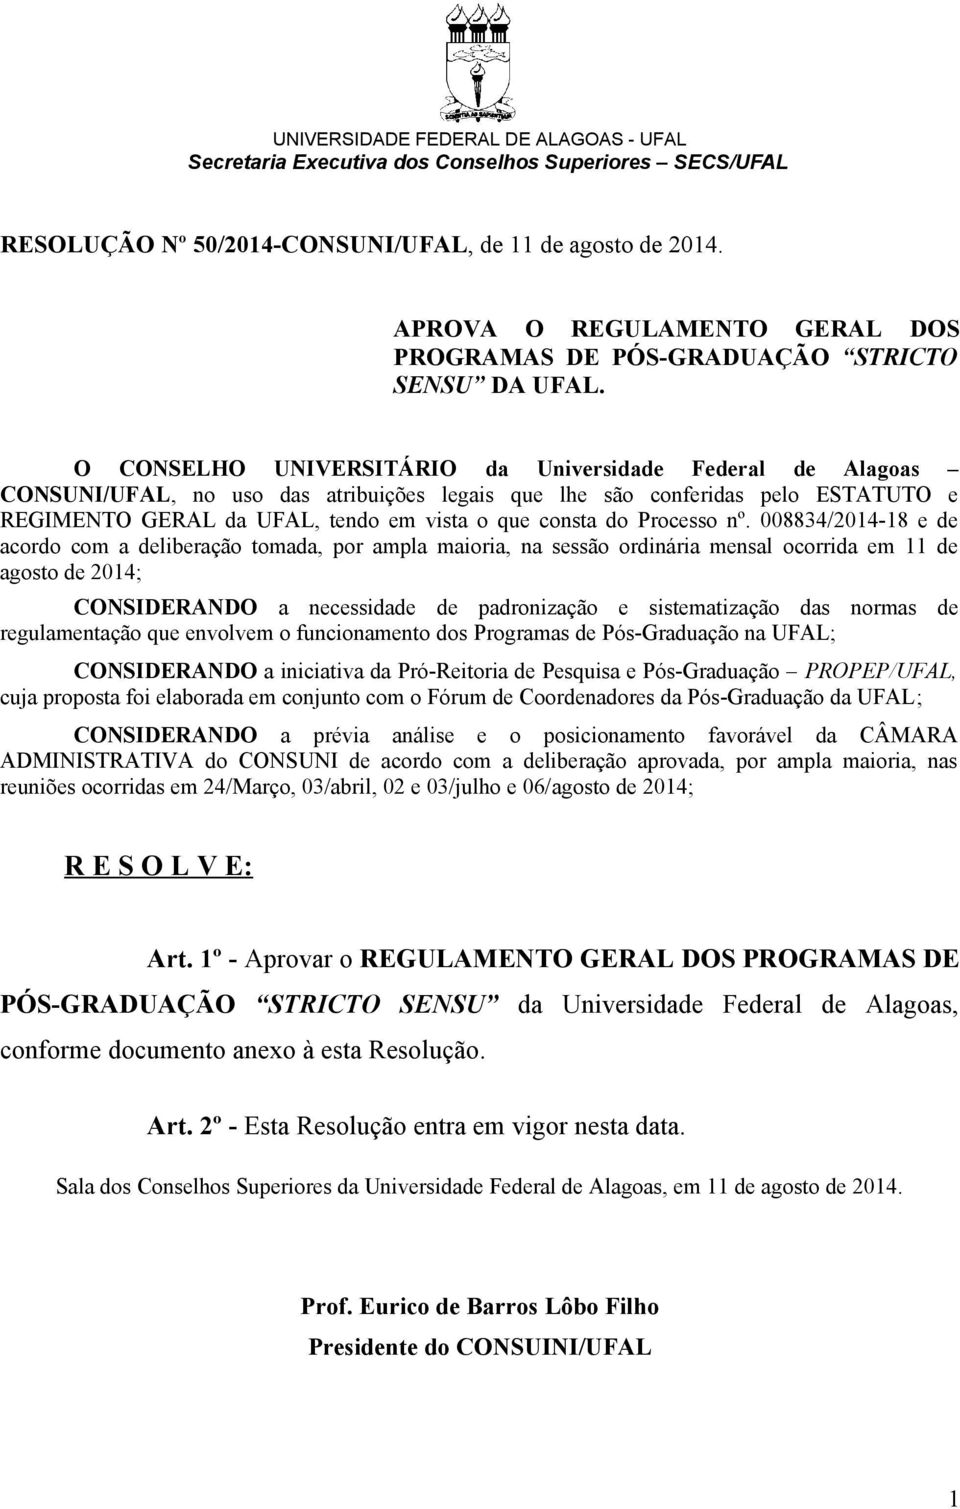 O CONSELHO UNIVERSITÁRIO da Universidade Federal de Alagoas CONSUNI/UFAL, no uso das atribuições legais que lhe são conferidas pelo ESTATUTO e REGIMENTO GERAL da UFAL, tendo em vista o que consta do